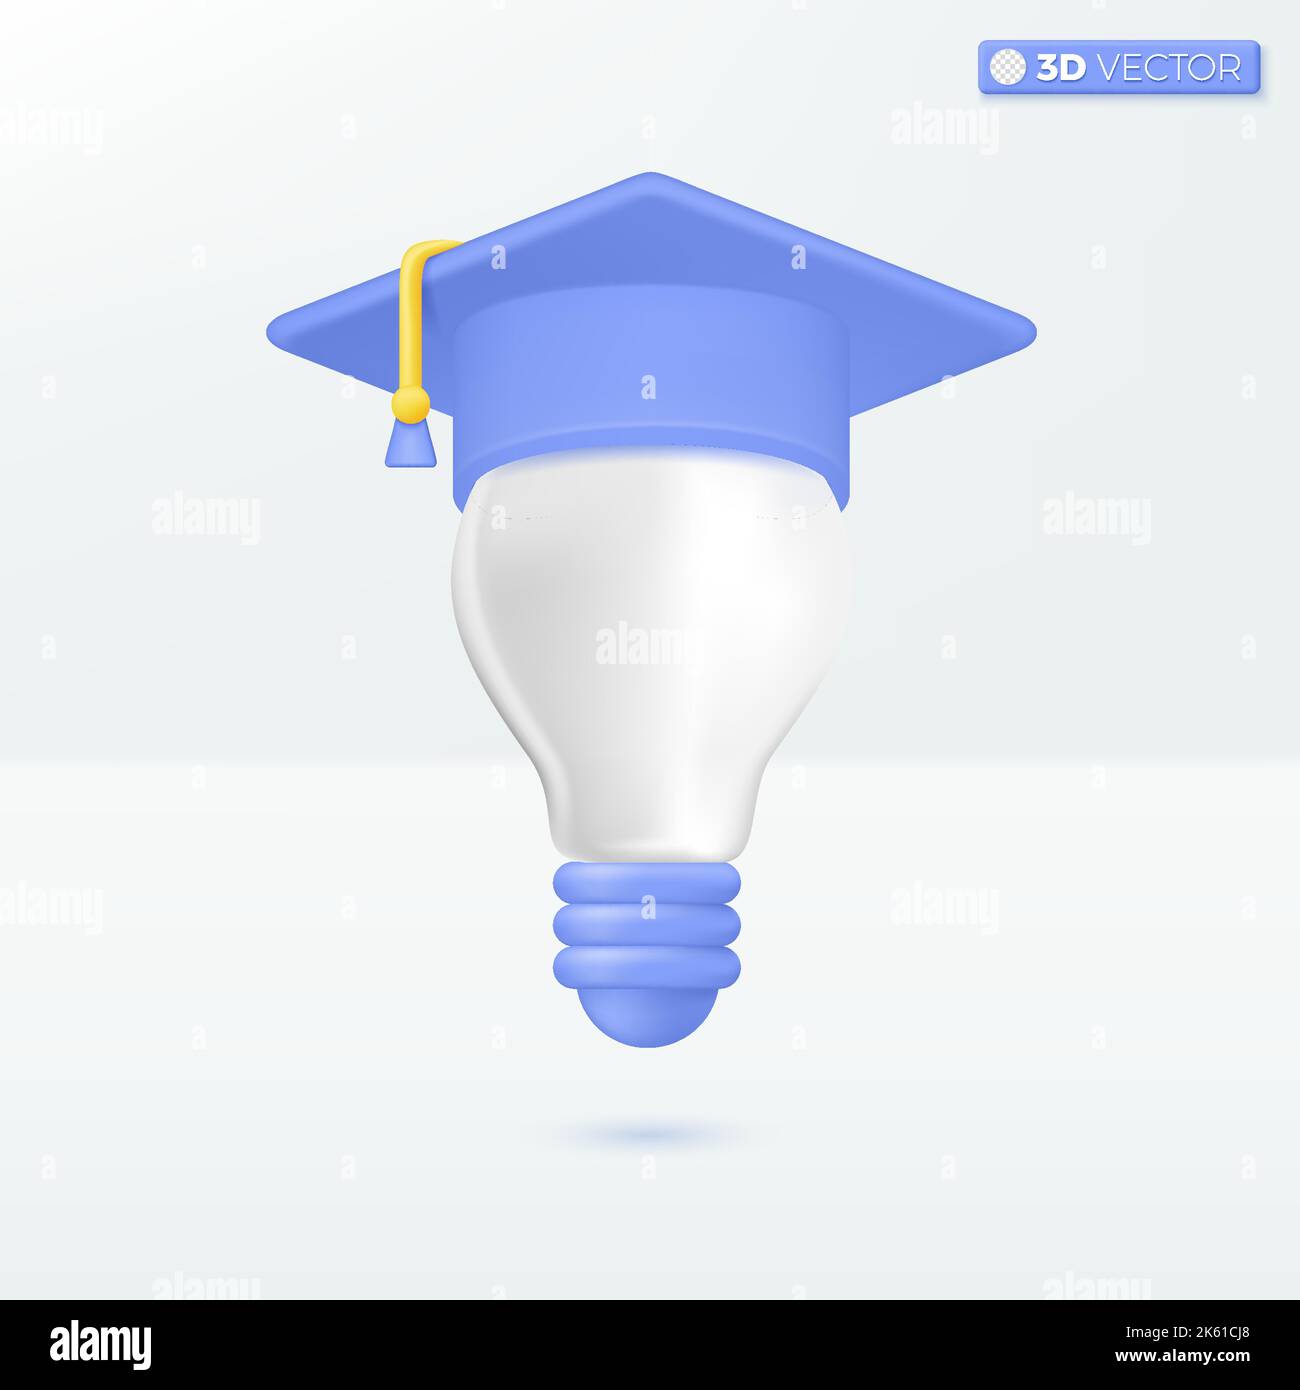 Ampoule avec symboles d'icône de chapeau de graduation. Inspiration, meilleure idée, concept d'éducation. 3D illustrations vectorielles isolées. Dessin animé pastel minimal Illustration de Vecteur